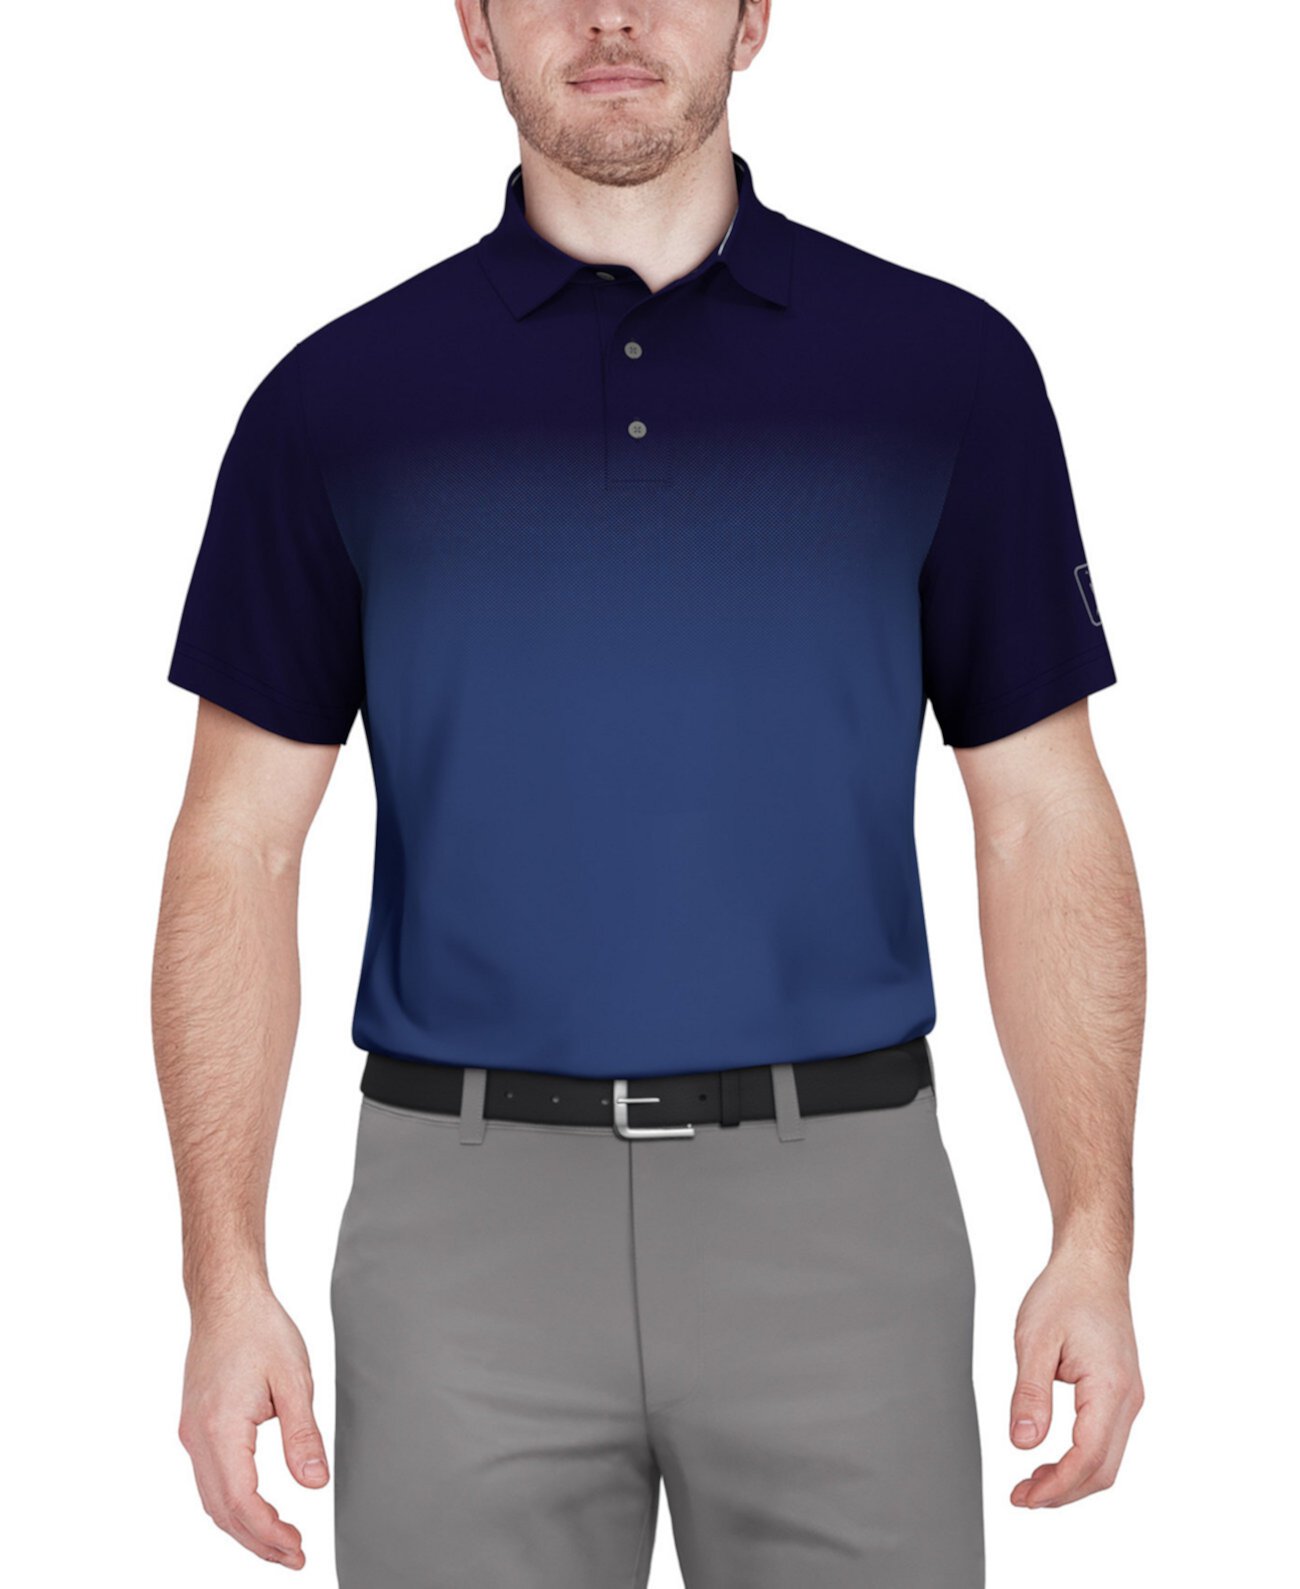 Мужская рубашка-поло с коротким рукавом с эффектом омбре PGA TOUR